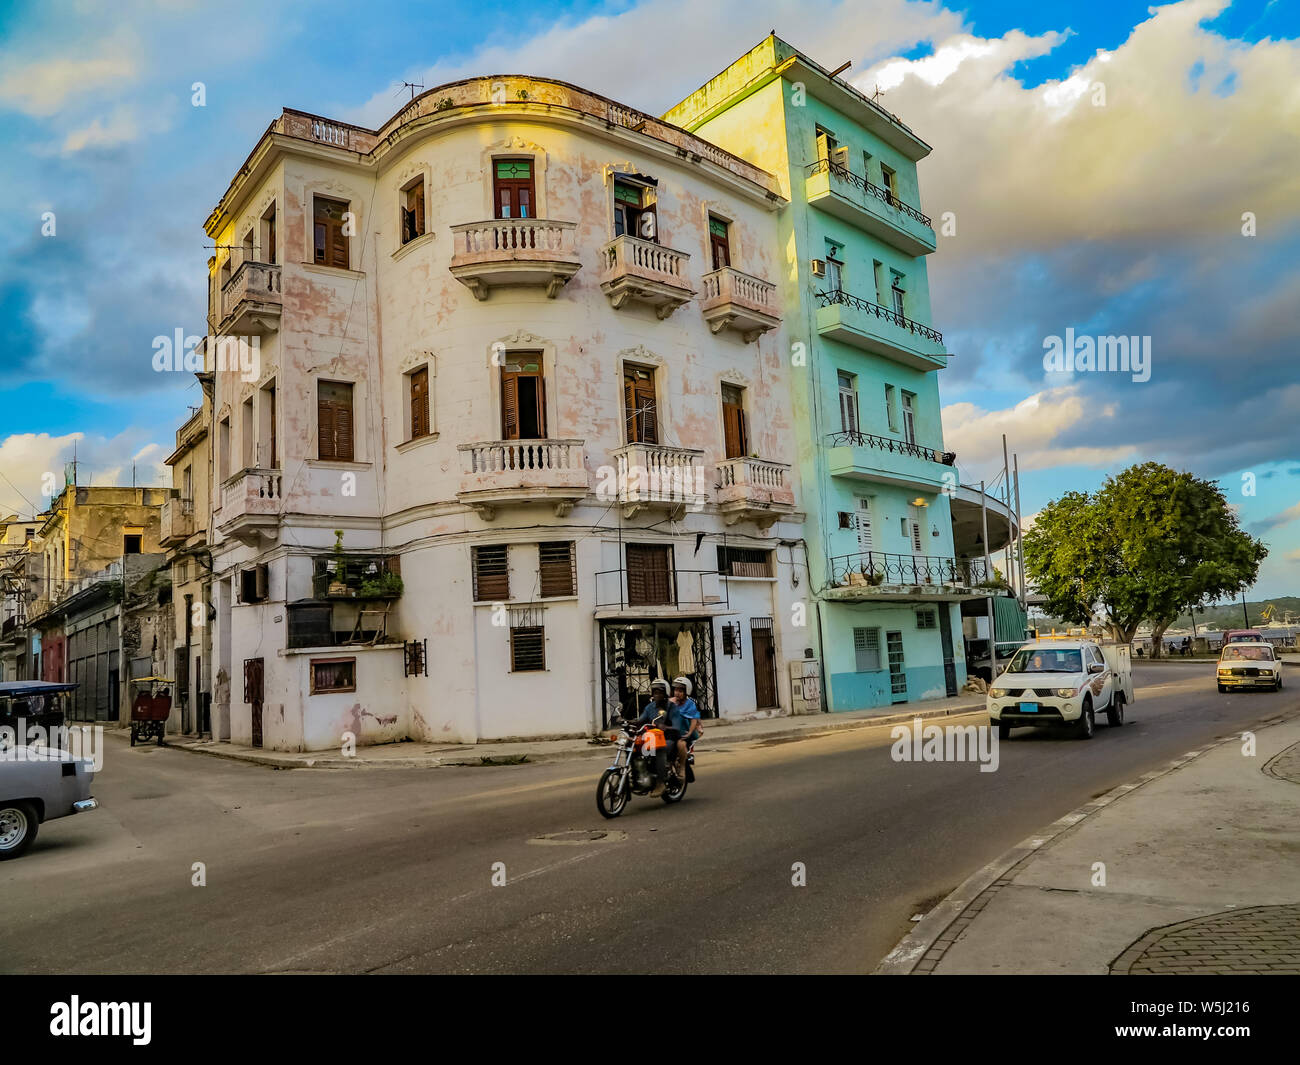 L'Avana, Cuba - Novembre 24, 2015: persone non identificate sulla strada di l'Avana, Cuba. Si tratta di Cuba la città capitale con architettura coloniale Spagnola. Foto Stock